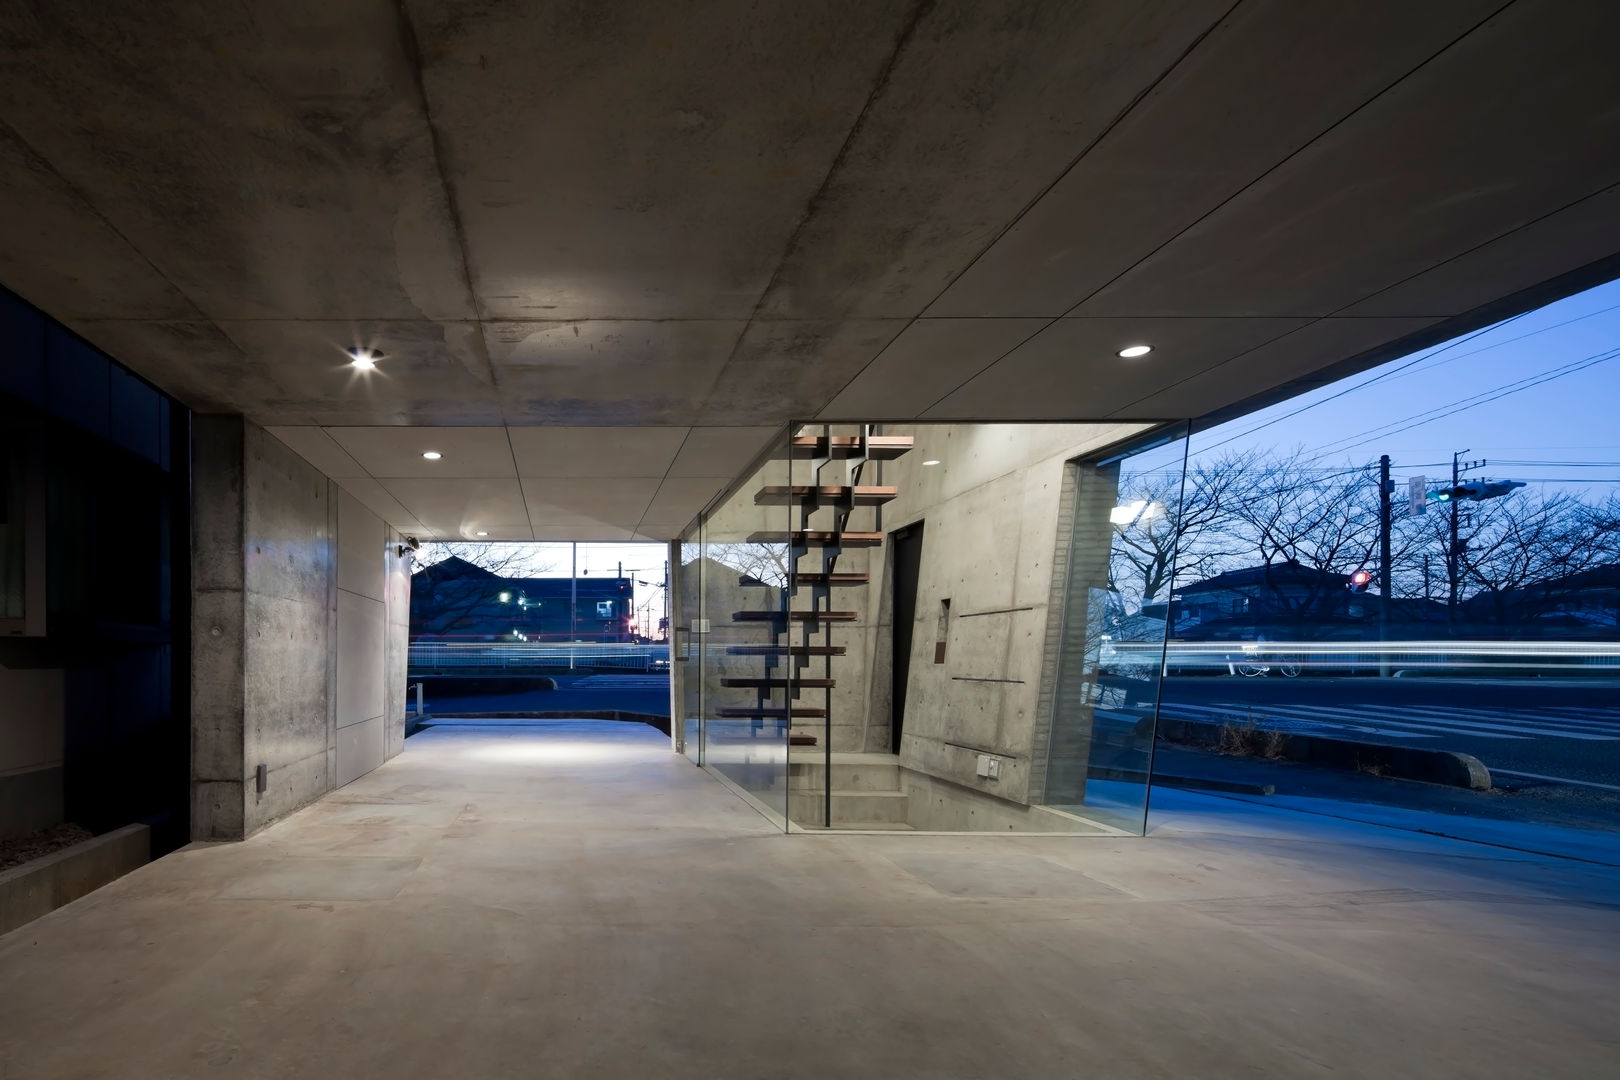 吉川の家 / House in Yoshikawa, 庄司寛建築設計事務所 / HIROSHI SHOJI ARCHITECT&ASSOCIATES: 庄司寛建築設計事務所 / HIROSHI SHOJI ARCHITECT&ASSOCIATESが手掛けた現代のです。,モダン